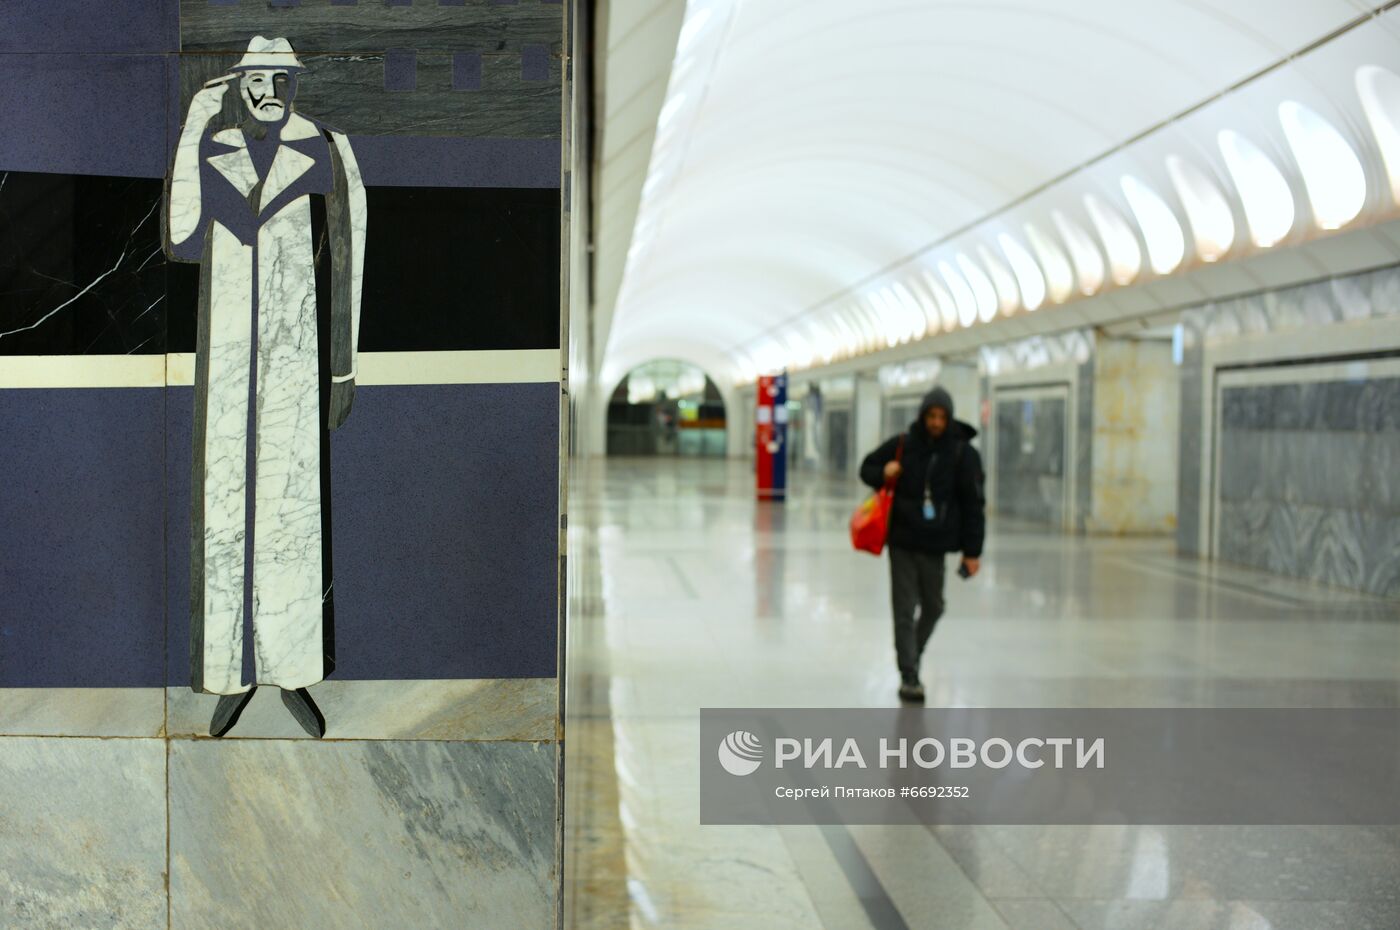 Станция метро "Достоевская" в Москве 